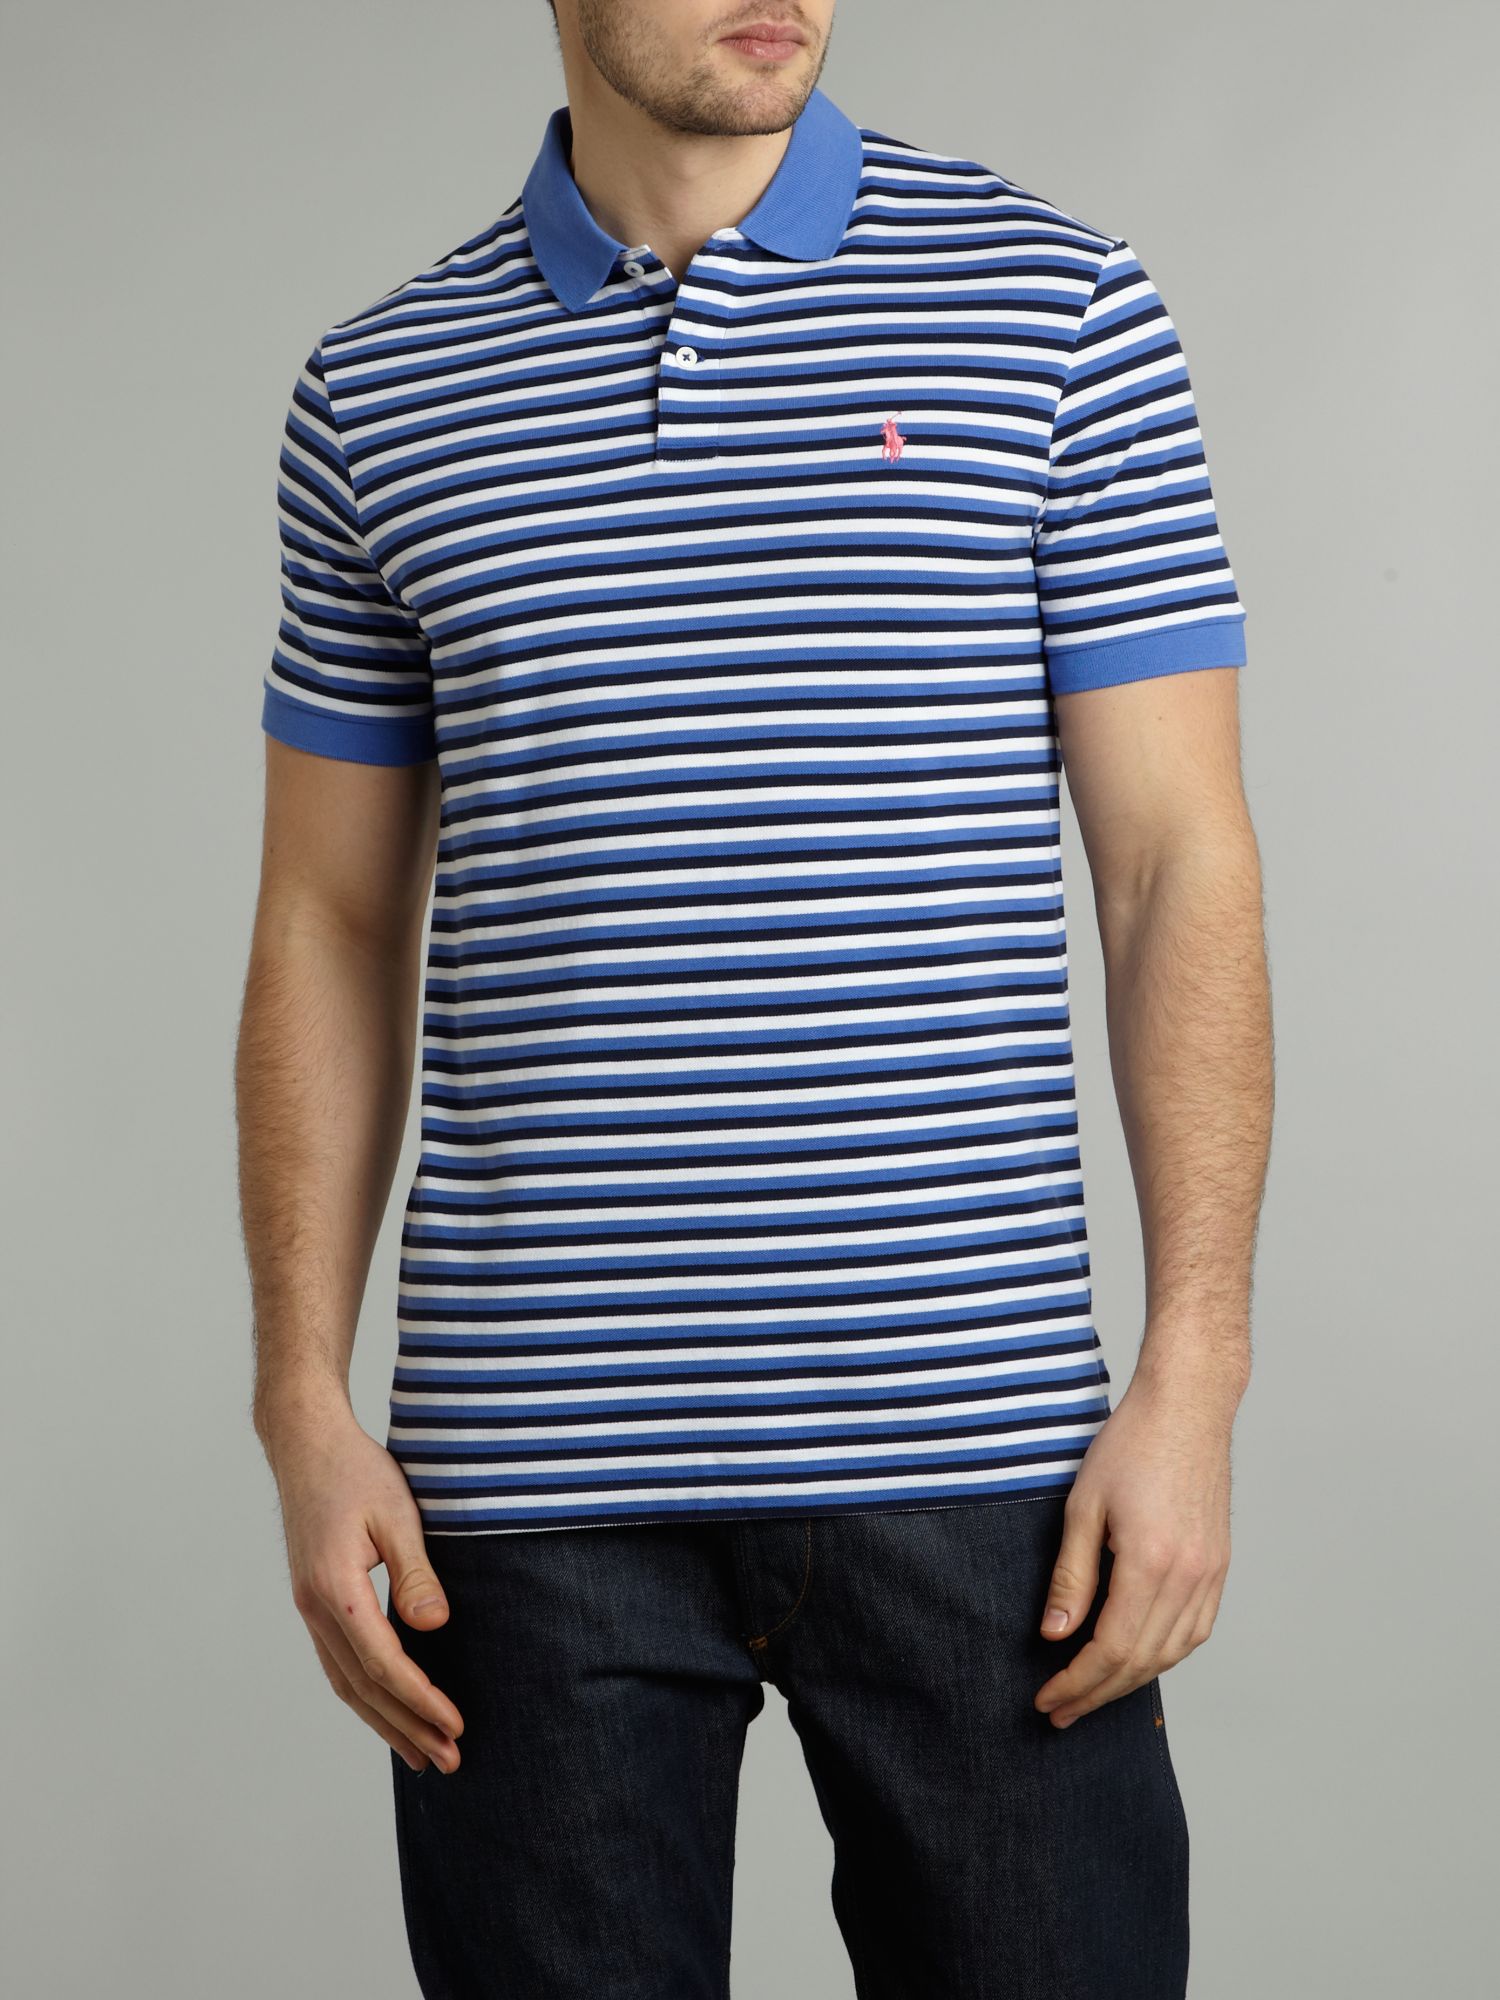 Ralph lauren golf Triple Stripe Short Sleeve Polo Shirt in Blue for Men